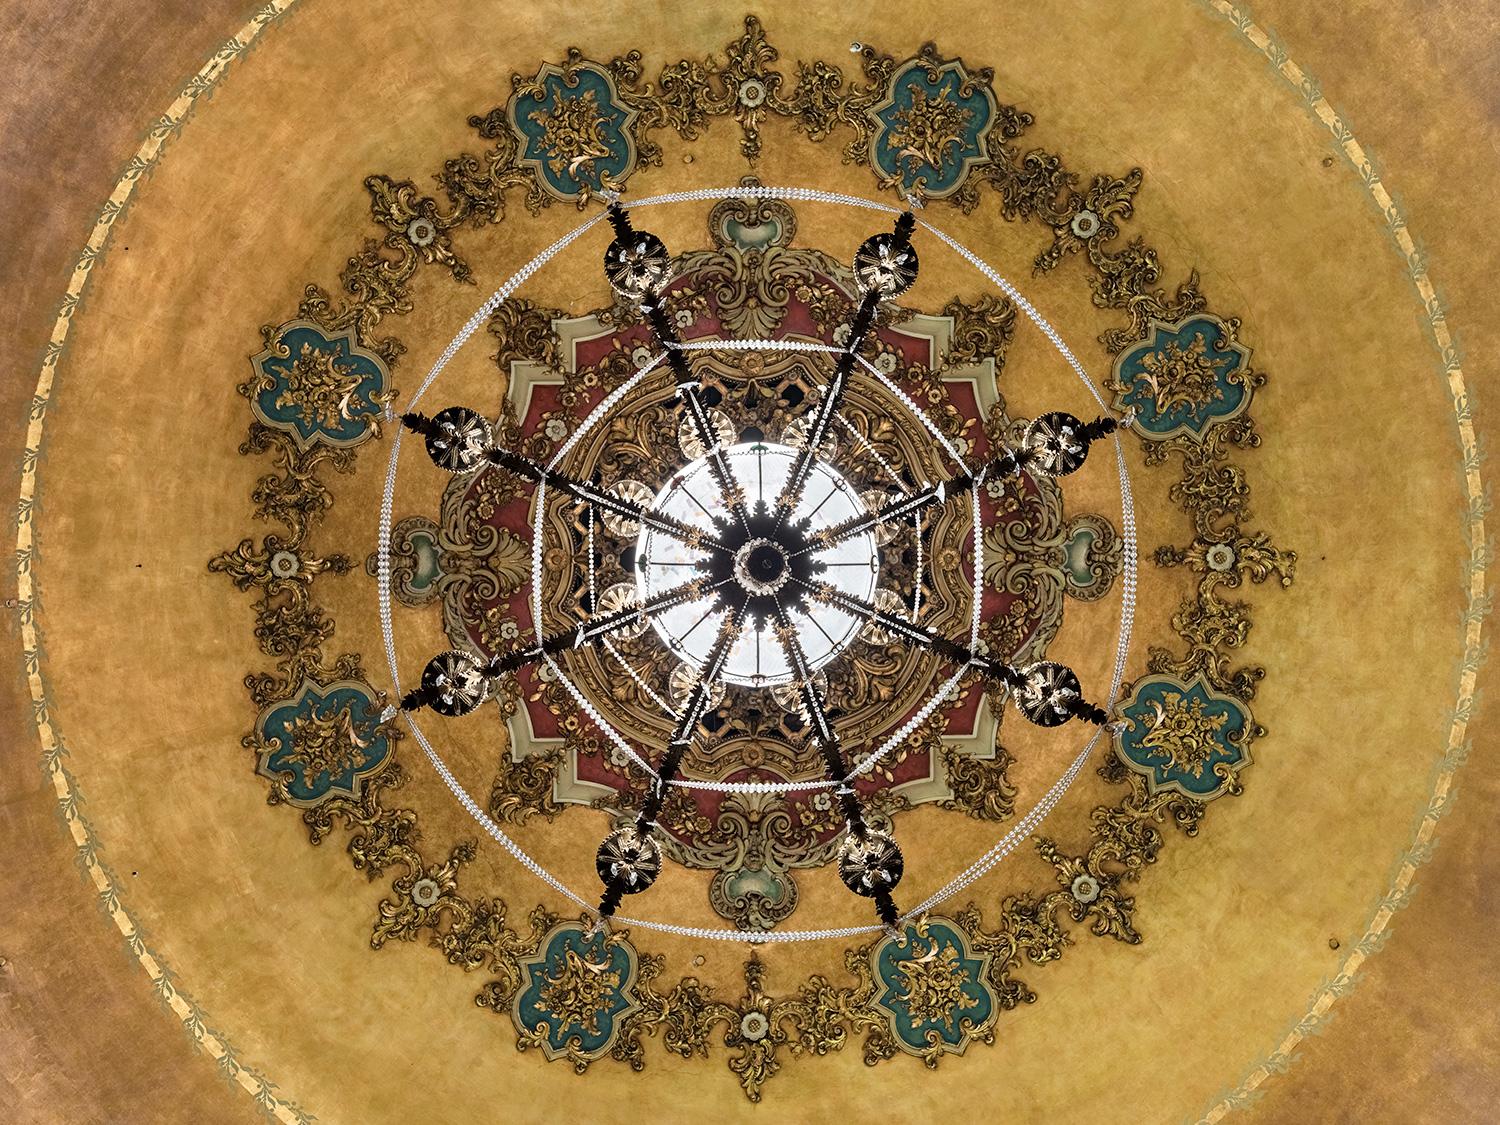 Christos J. Palios - Midland Theatre Ceiling Dome, Studie II, 2021, gedruckt nach